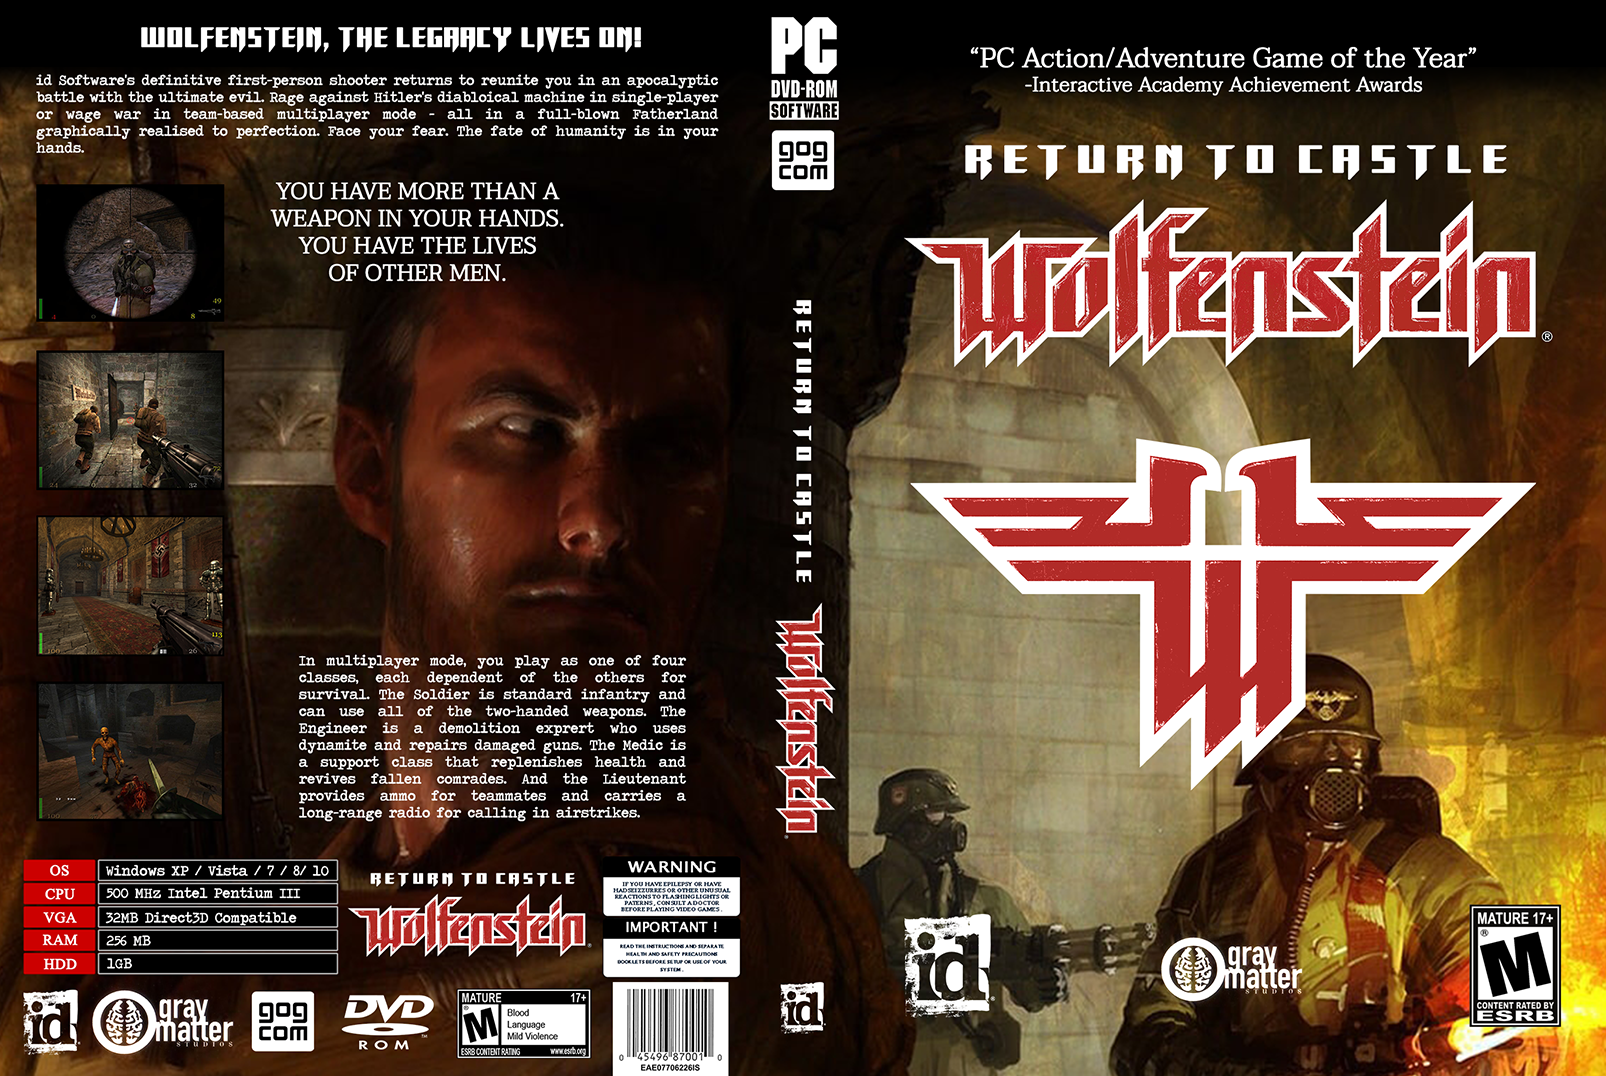 Return to Castle Wolfenstein box cover